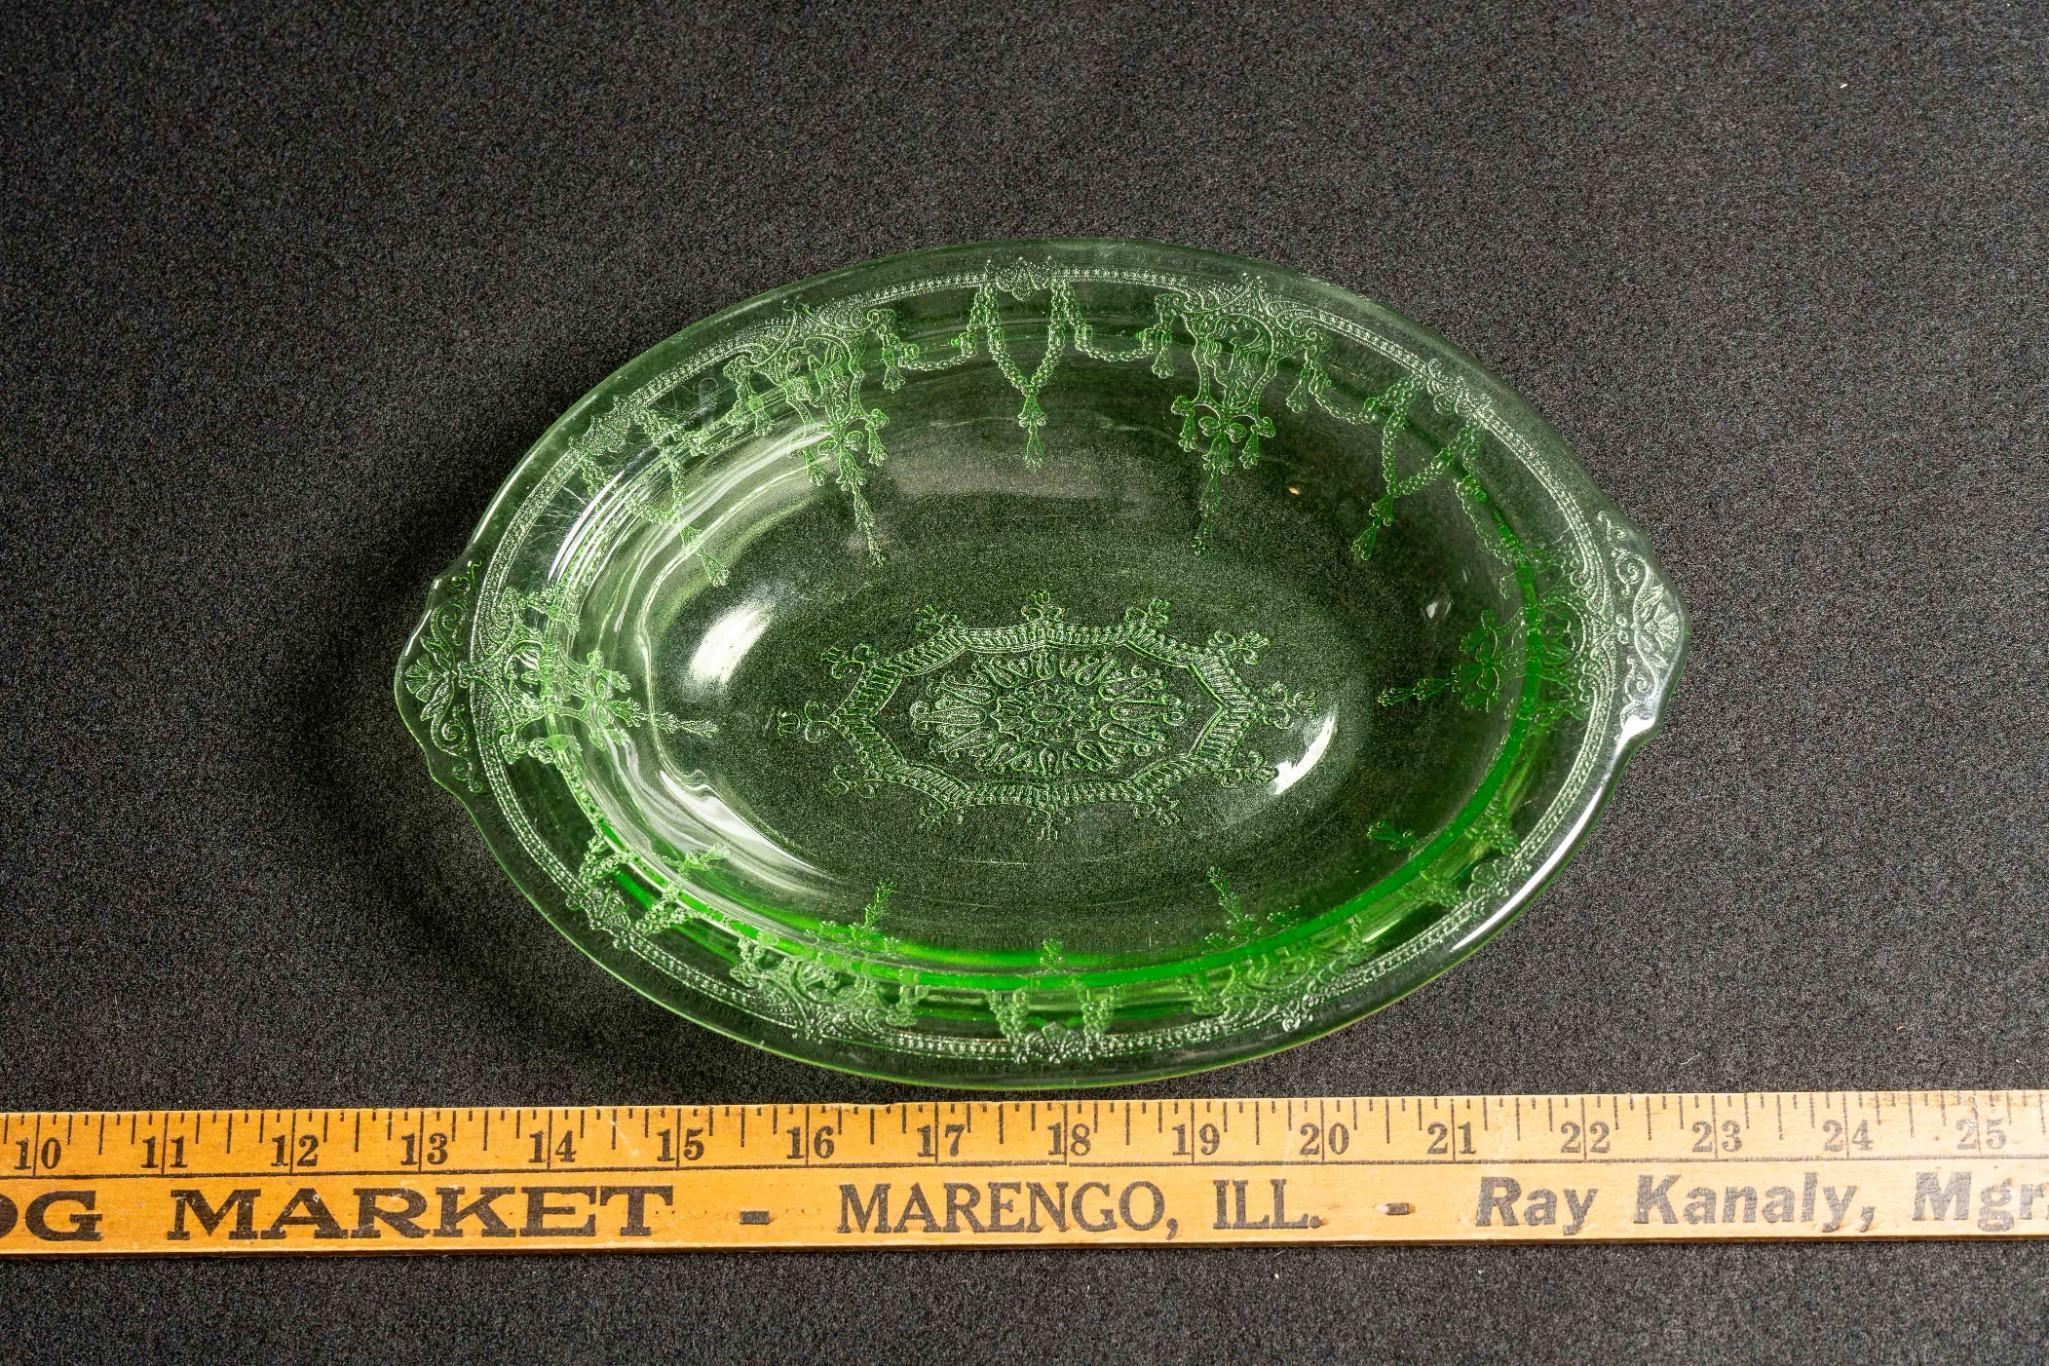 Antique Uranium Glass "Cameo" Serving Dish